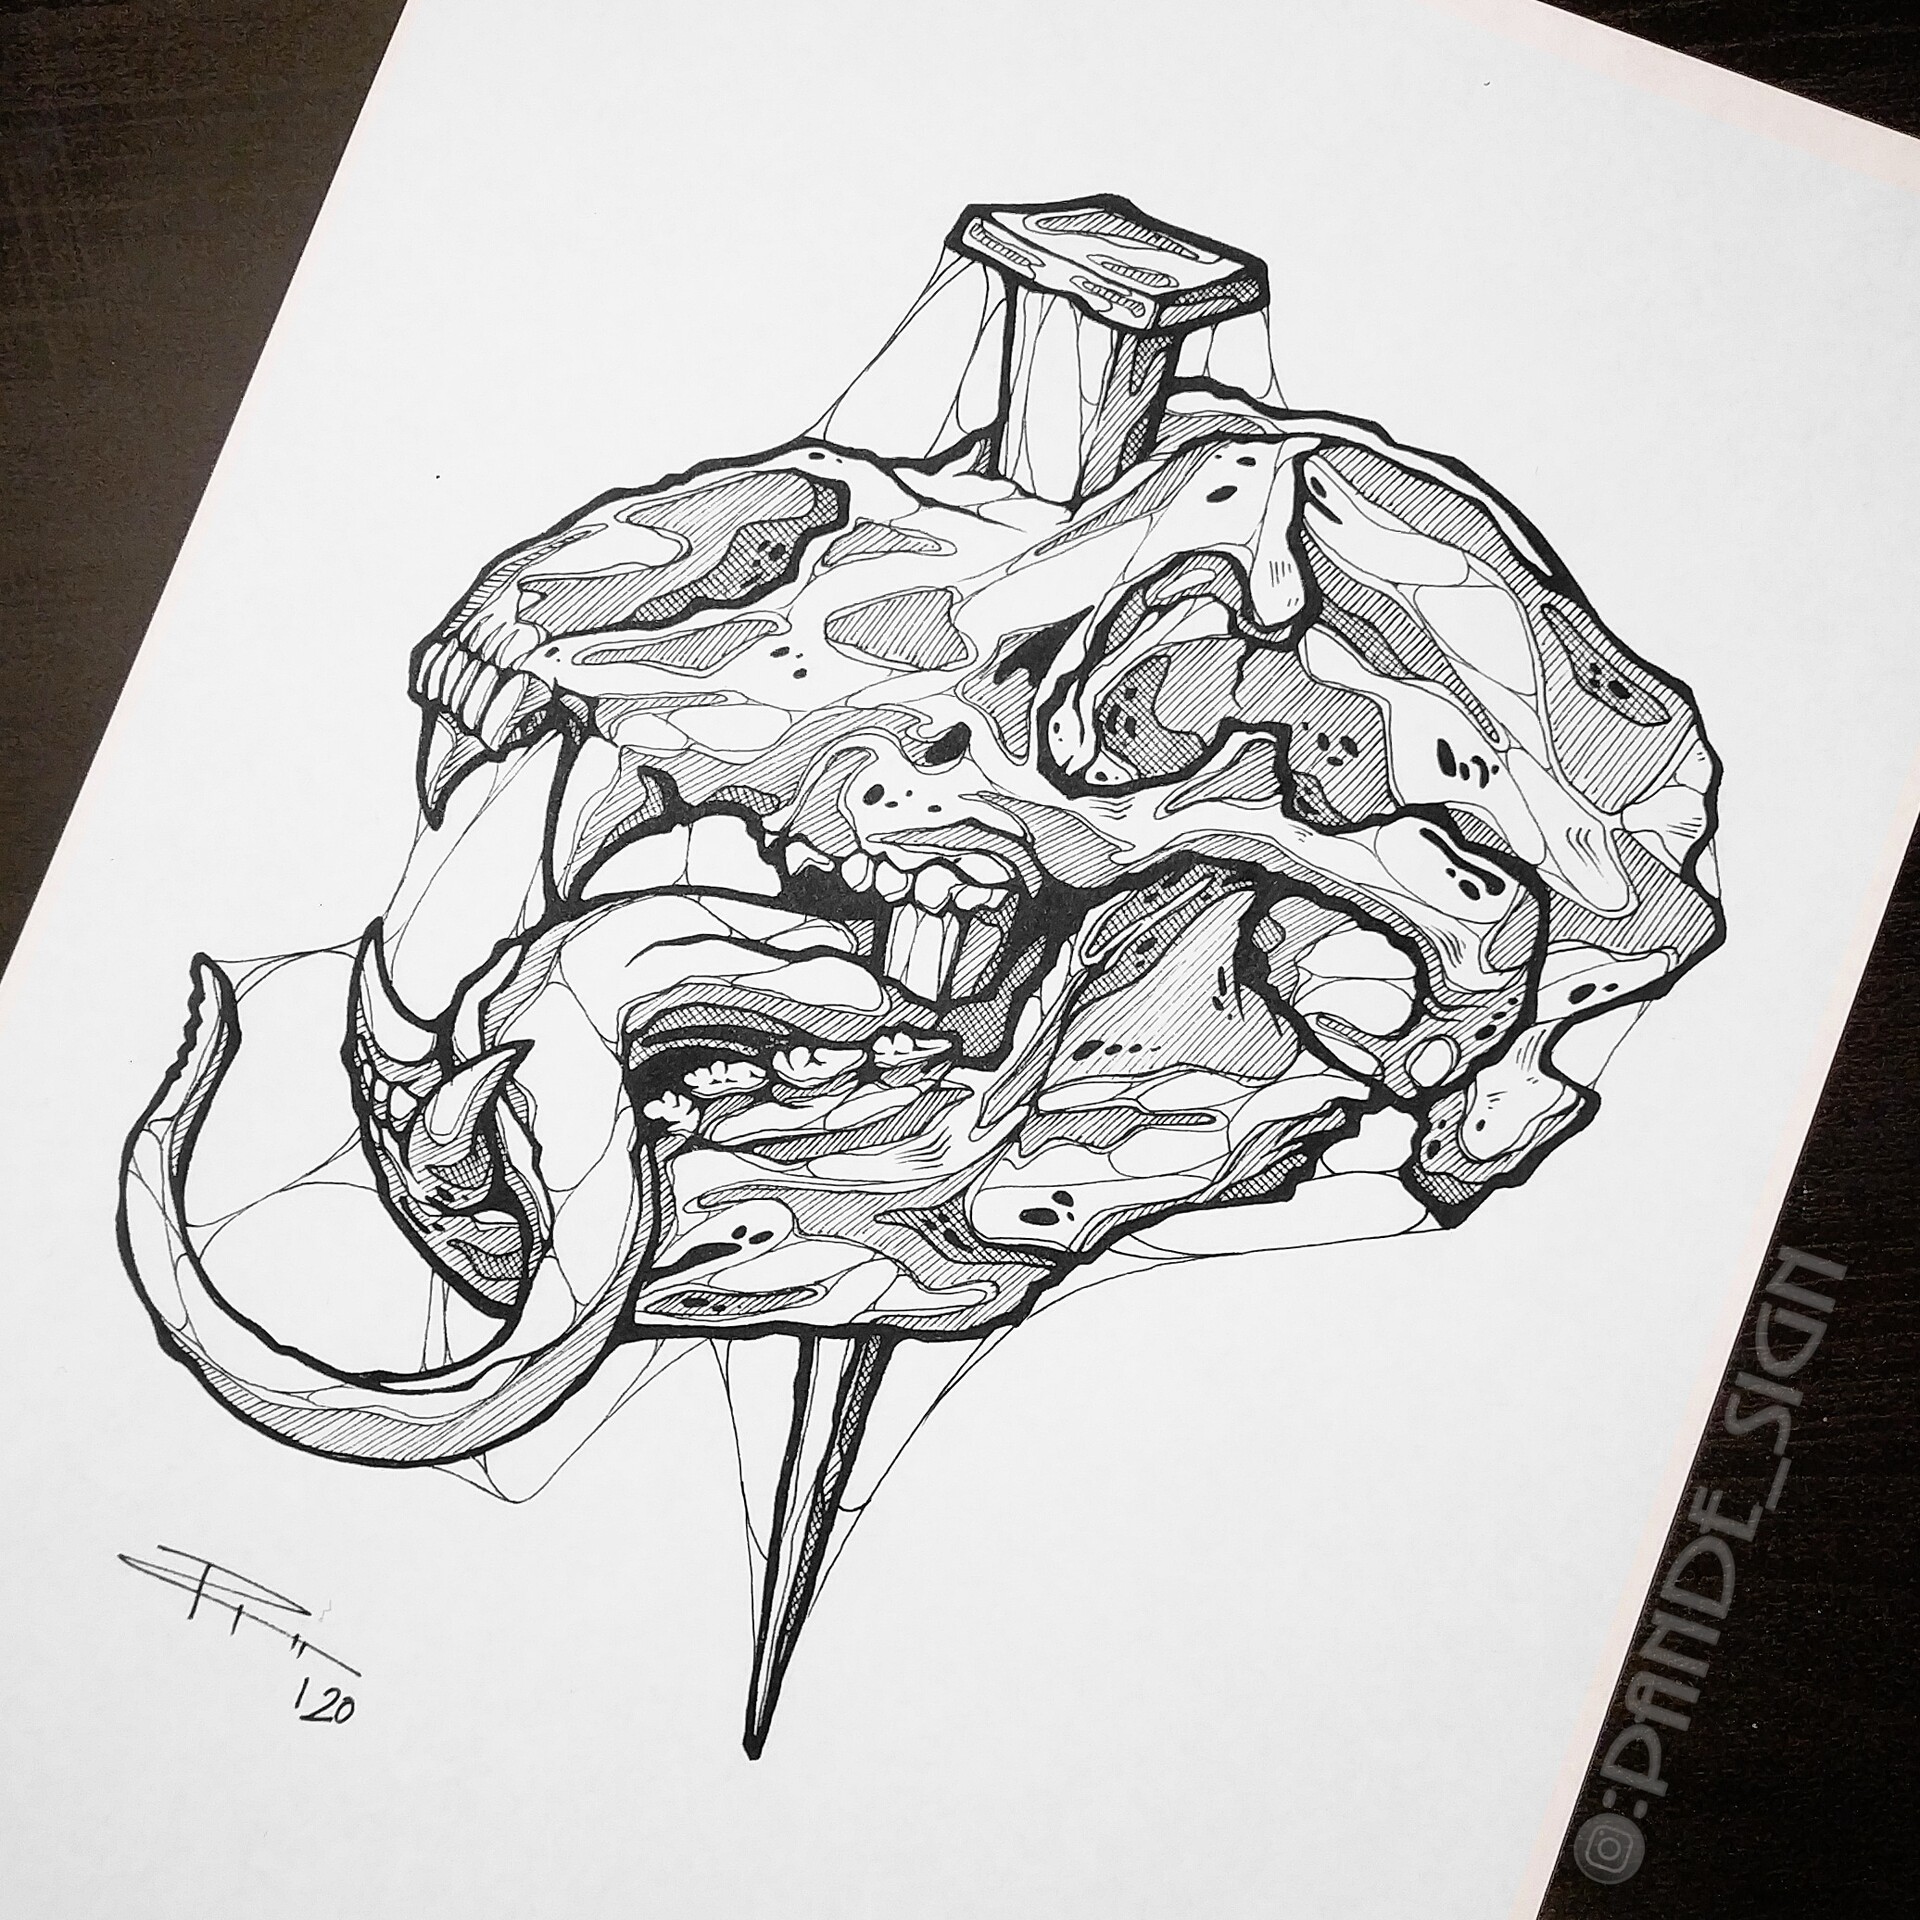 ArtStation - Animal skull tattoo project